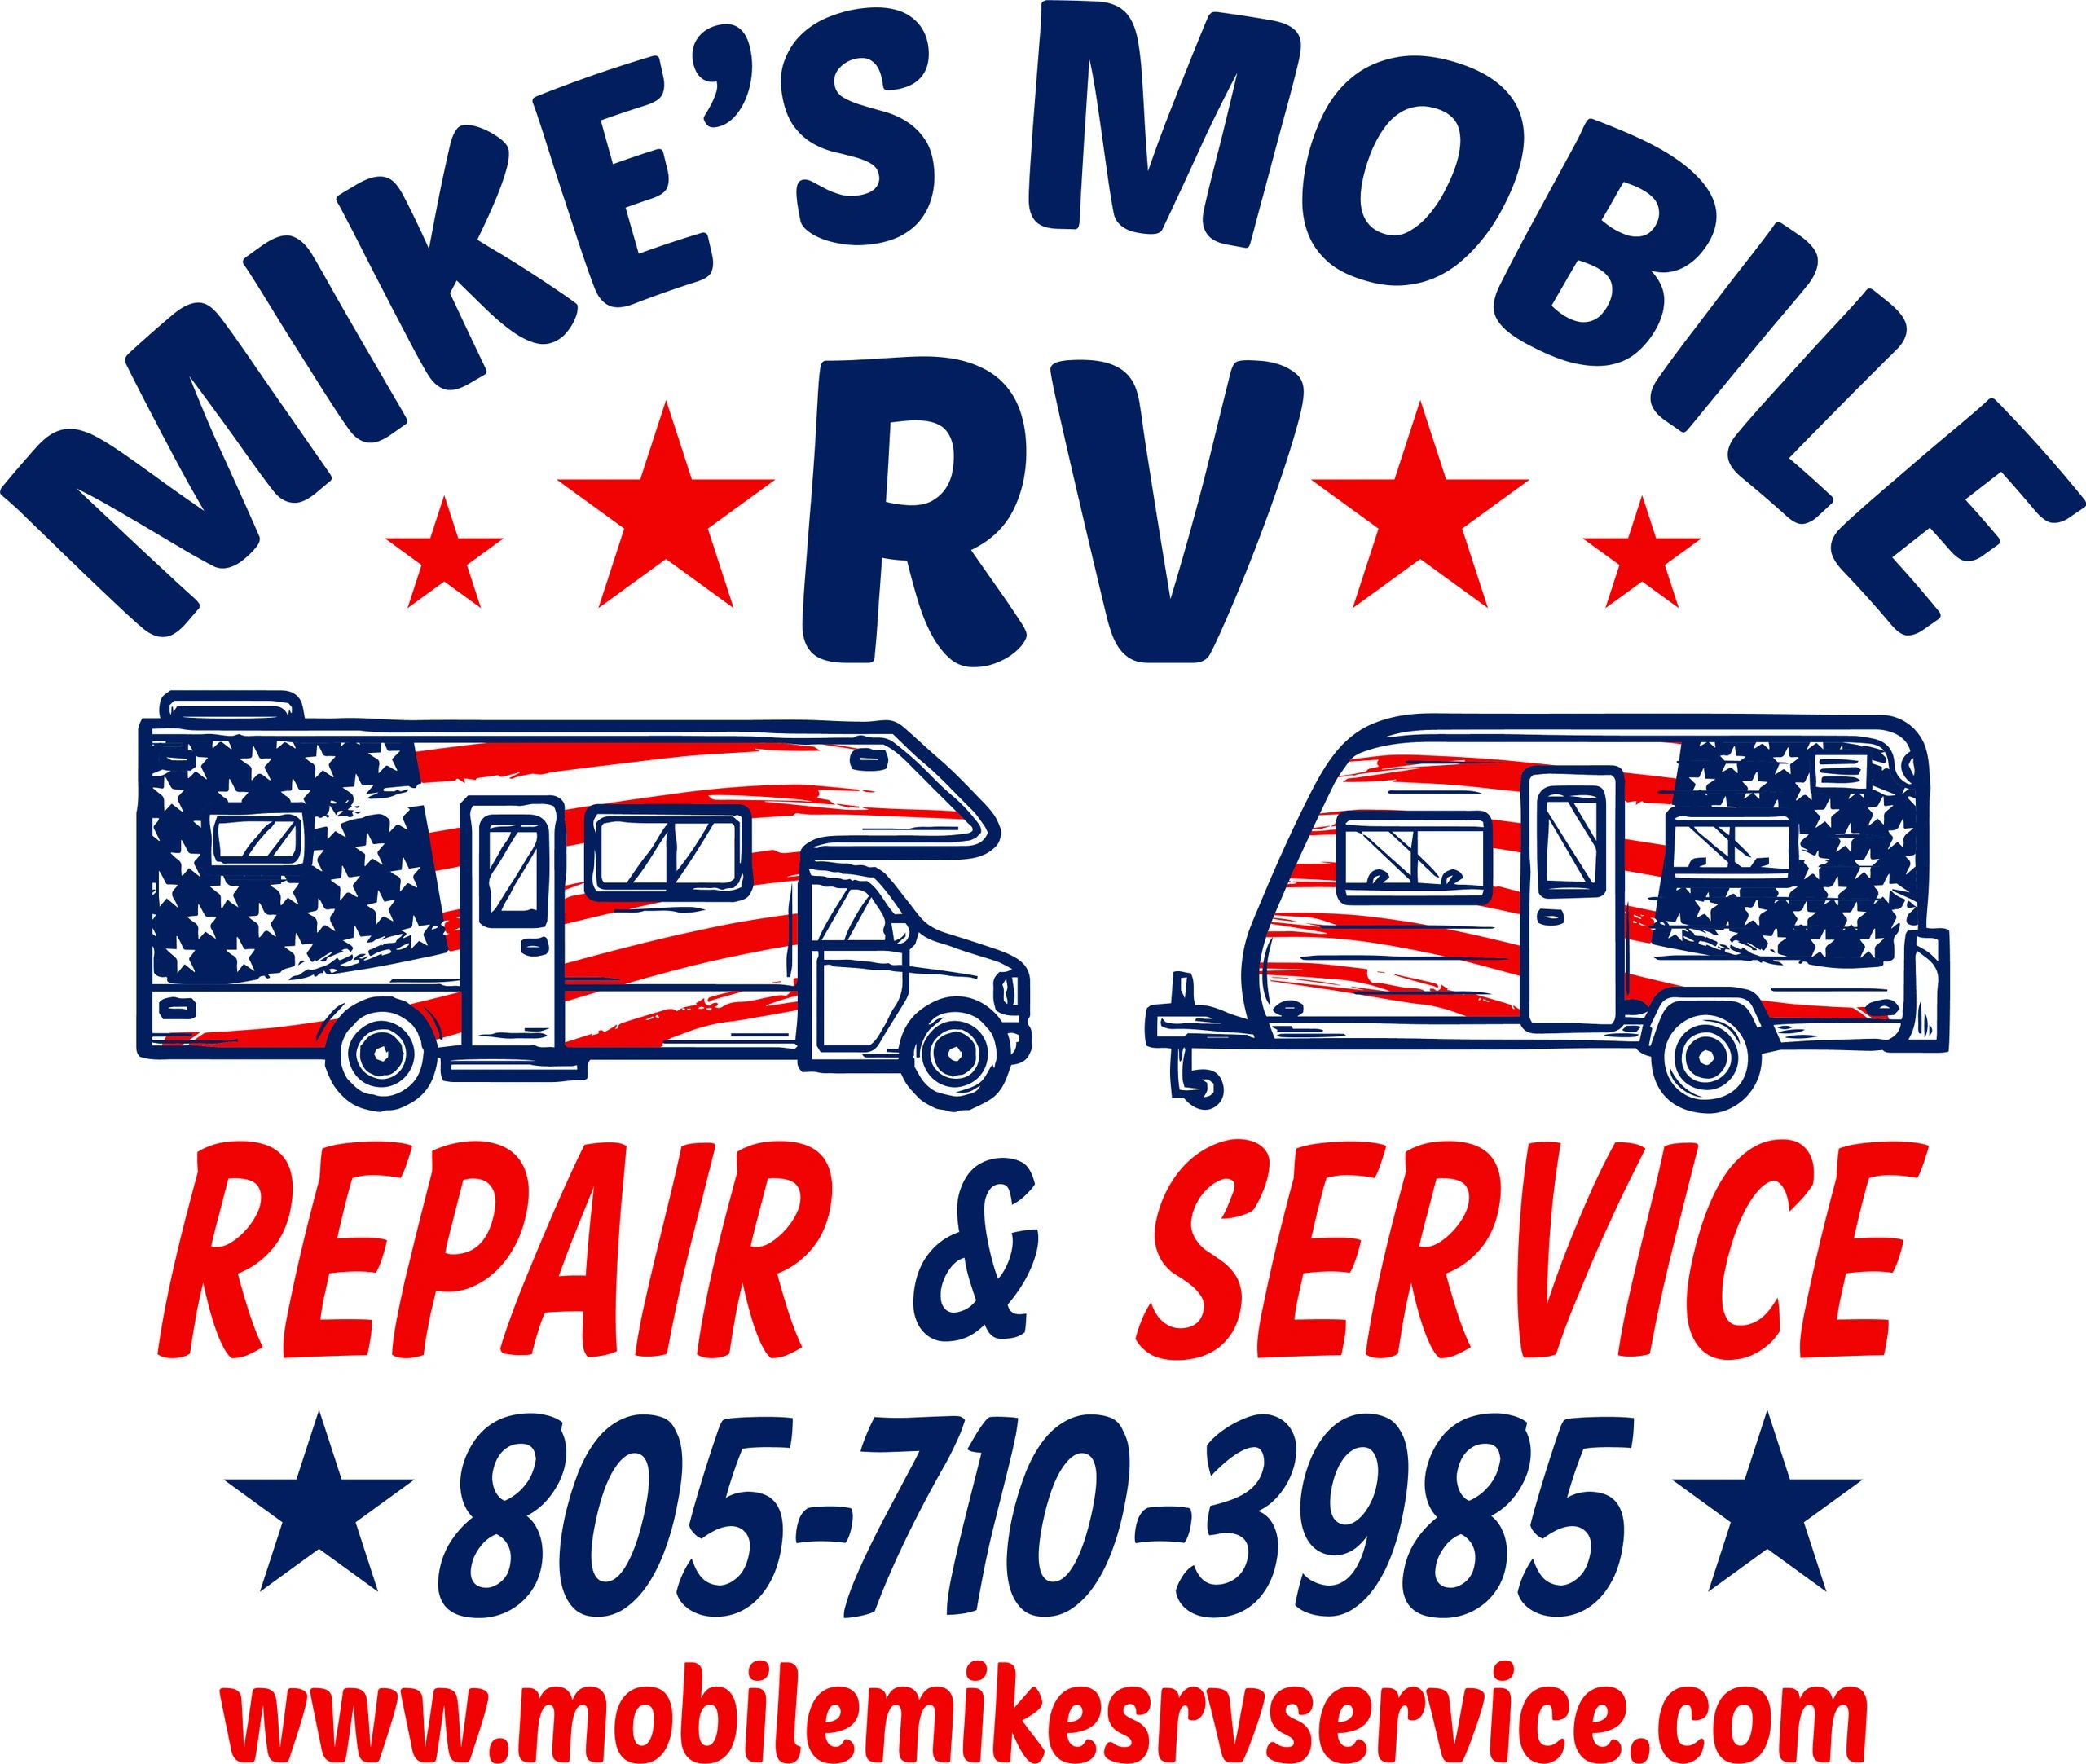 Mobile RV Repair - Mike's Mobile RV Repair and Service